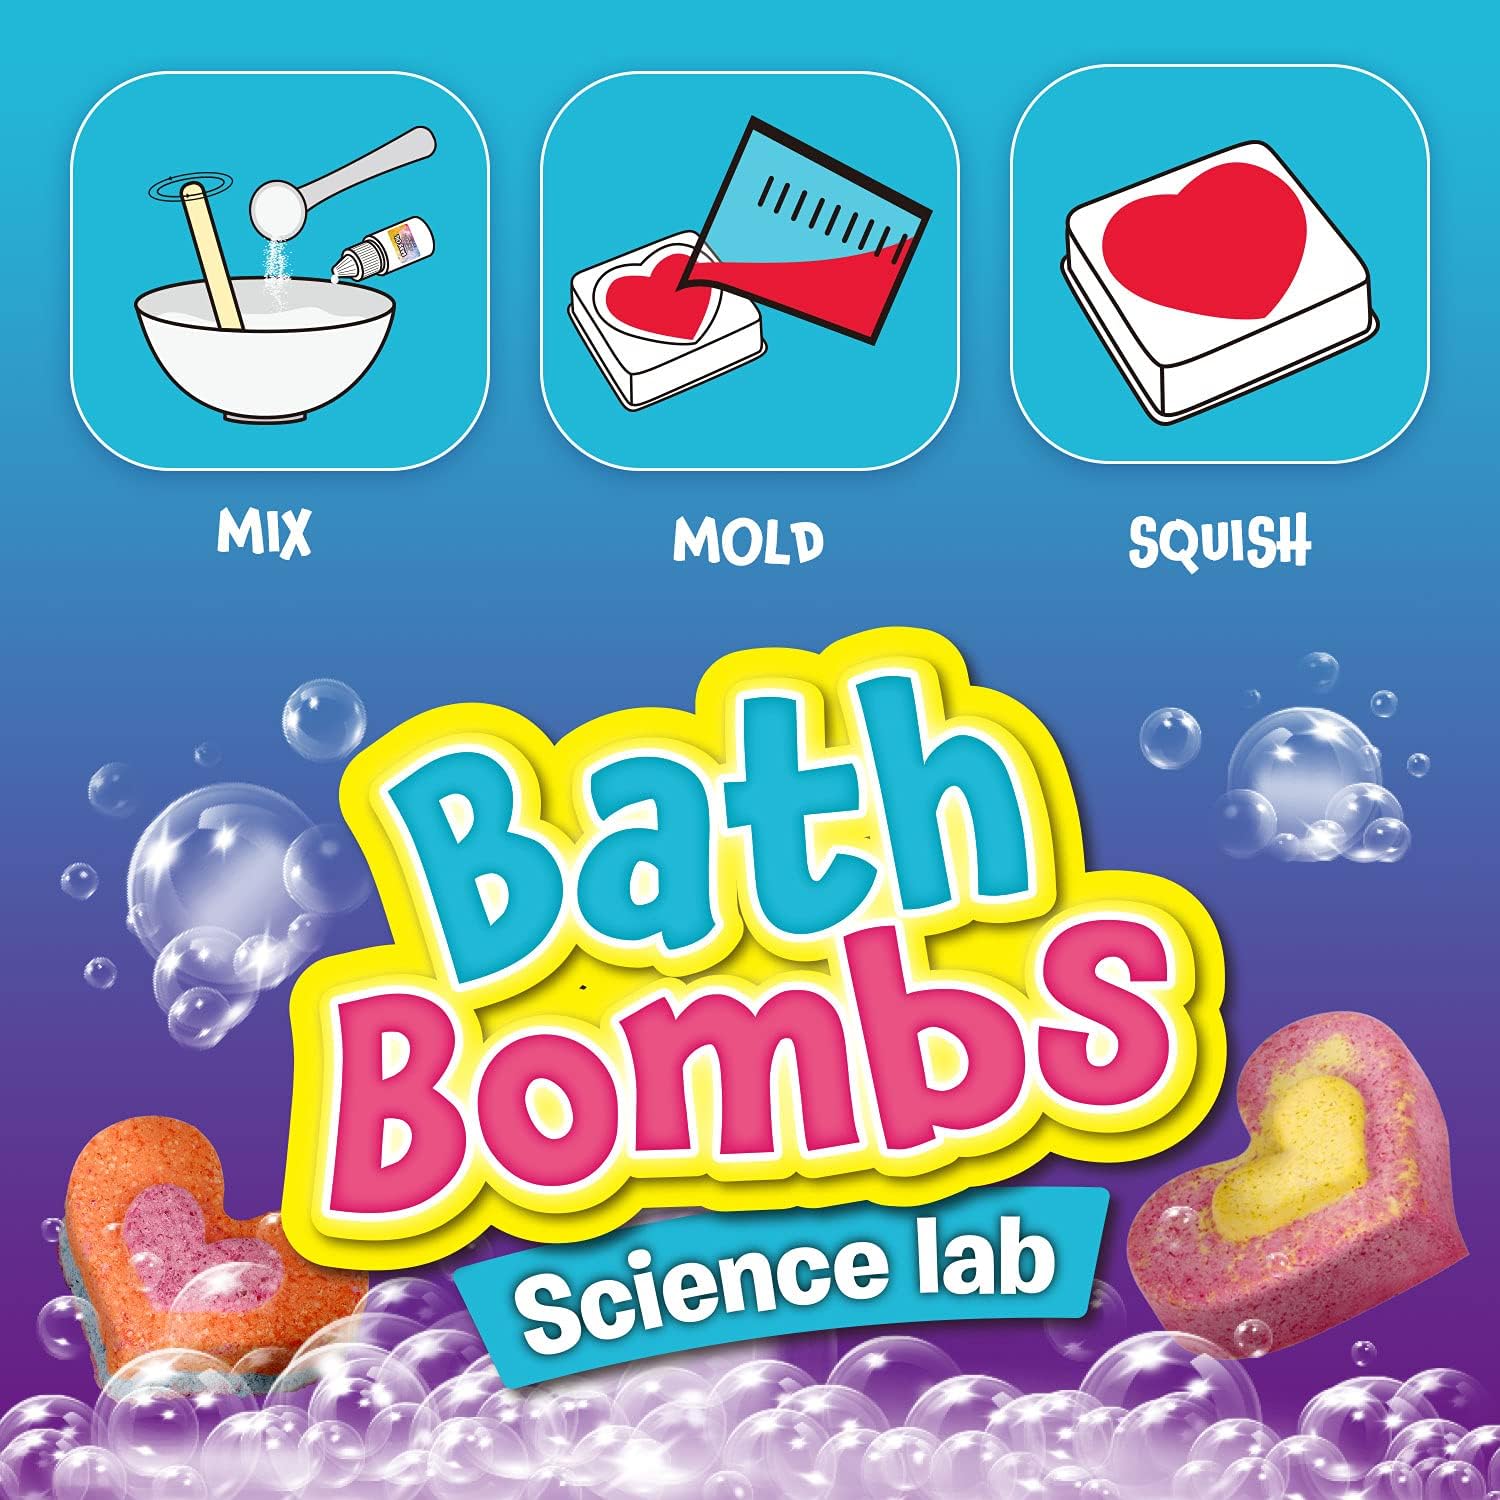 مختبر علوم قنابل الاستحمام من إيدومان، لعبة DIY للأطفال EDM074، 8+